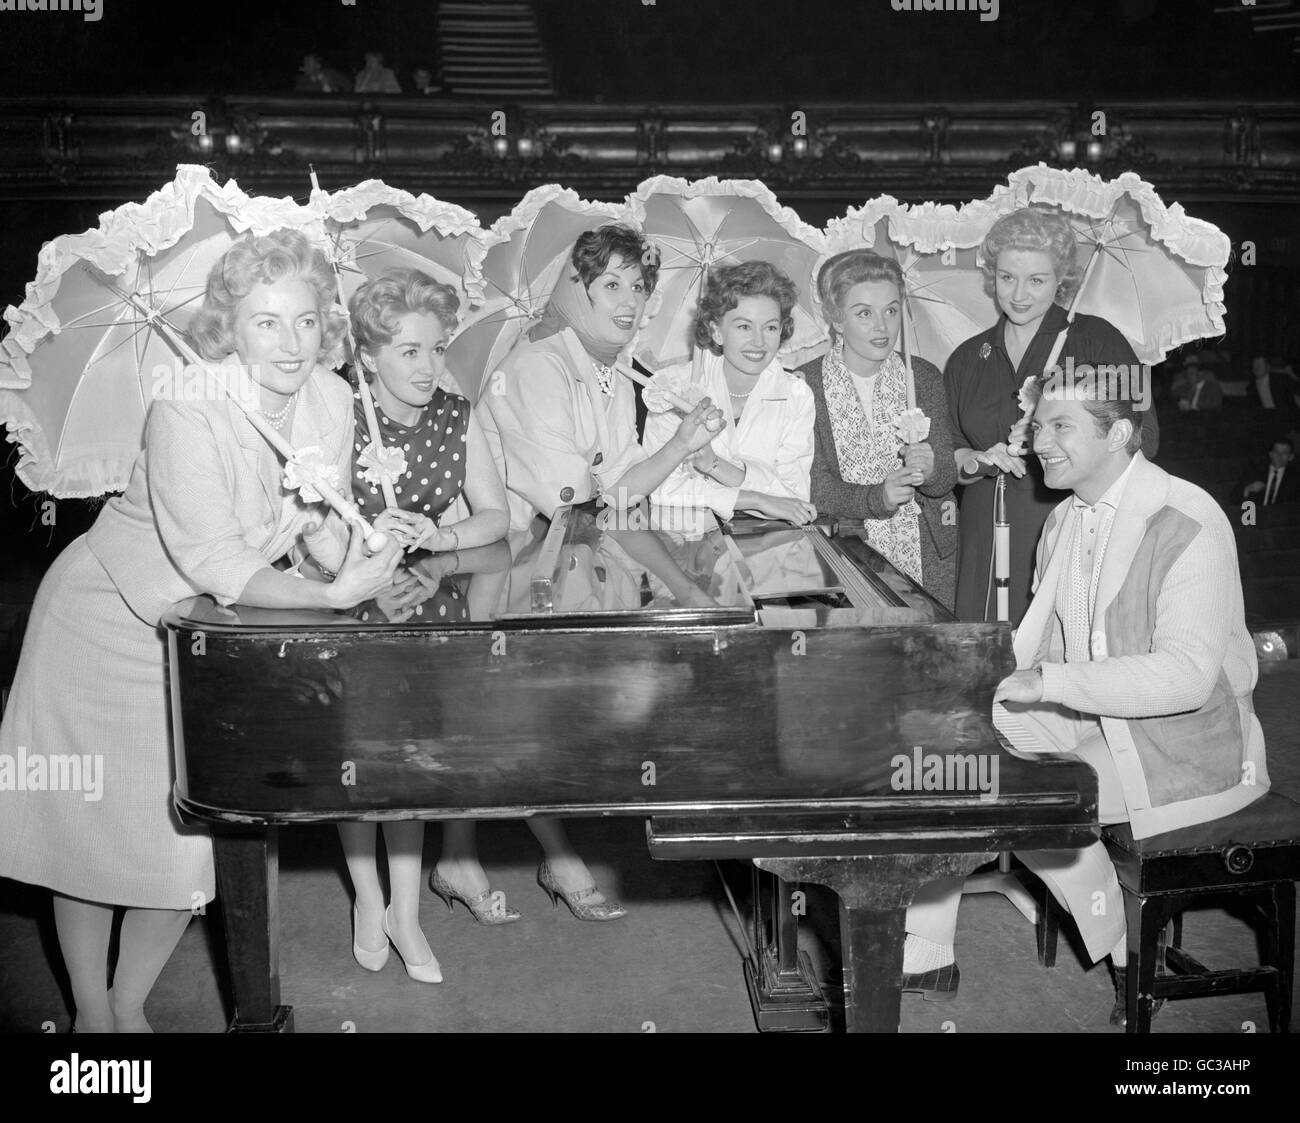 La pianiste américaine Liberace, entourée de (l-r) Vera Lynn, Marion Ryan, Alma Cogan, Janette Scott, Yana et Anne Shelton. Ils assistaient tous à une répétition du Royal Variety Show au Victoria Palace de Londres. Banque D'Images